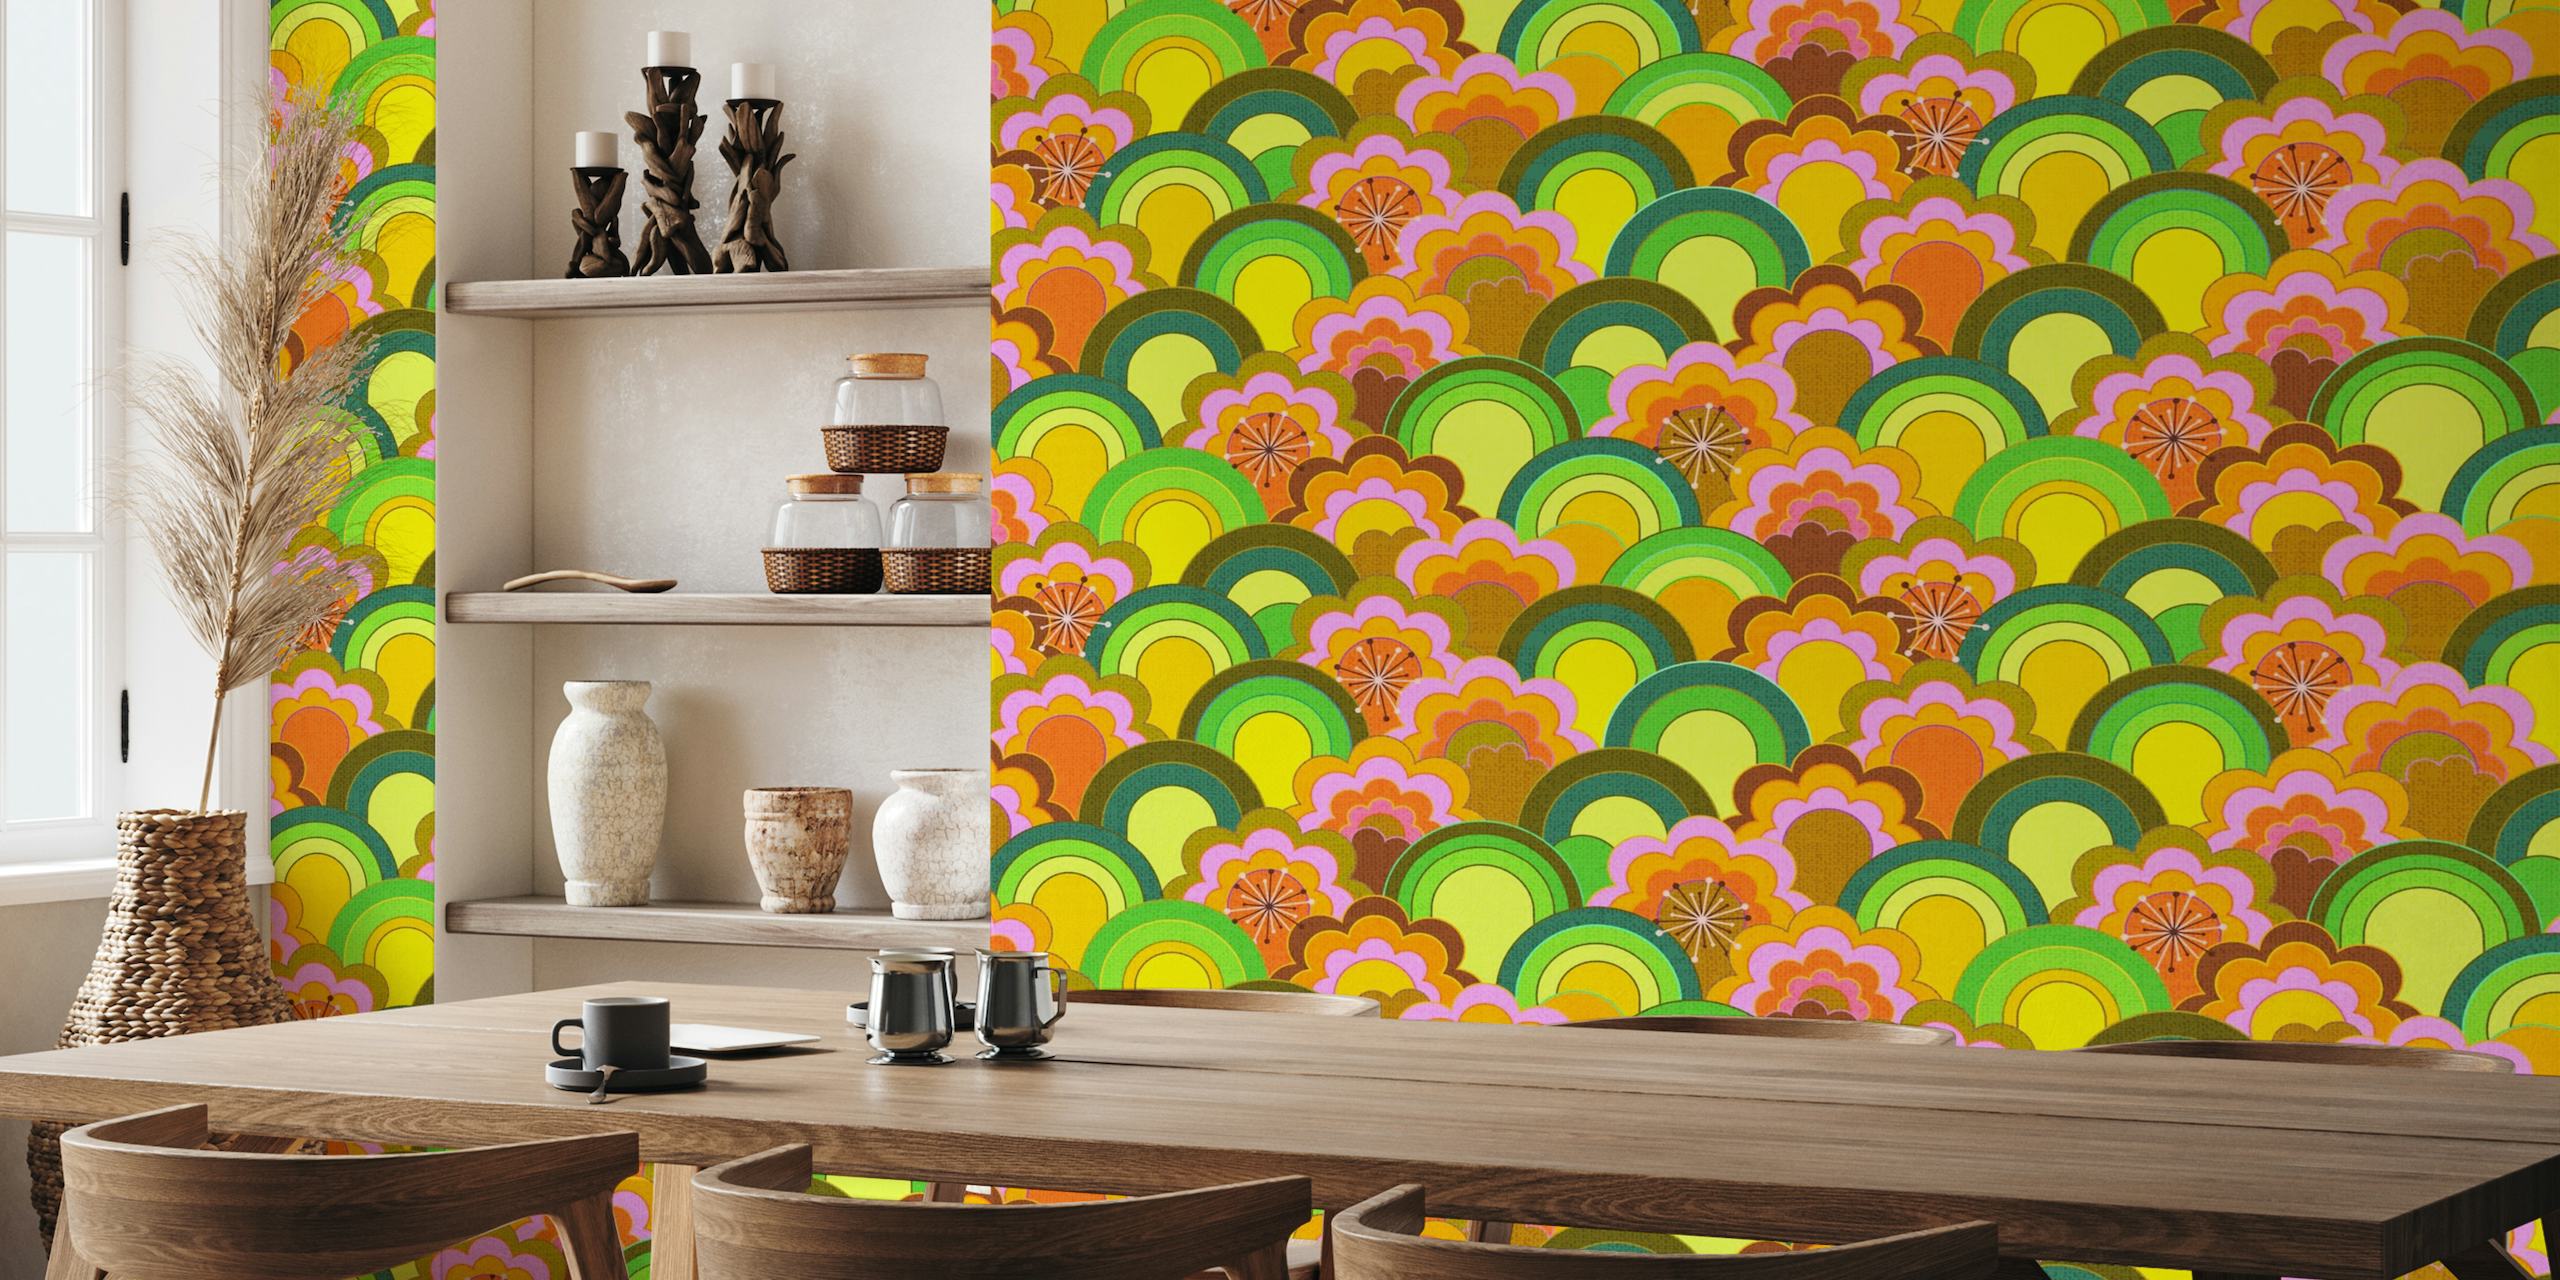 Fotomural vinílico de parede colorido de flores do arco-íris inspirado nos anos 70 com aparência texturizada